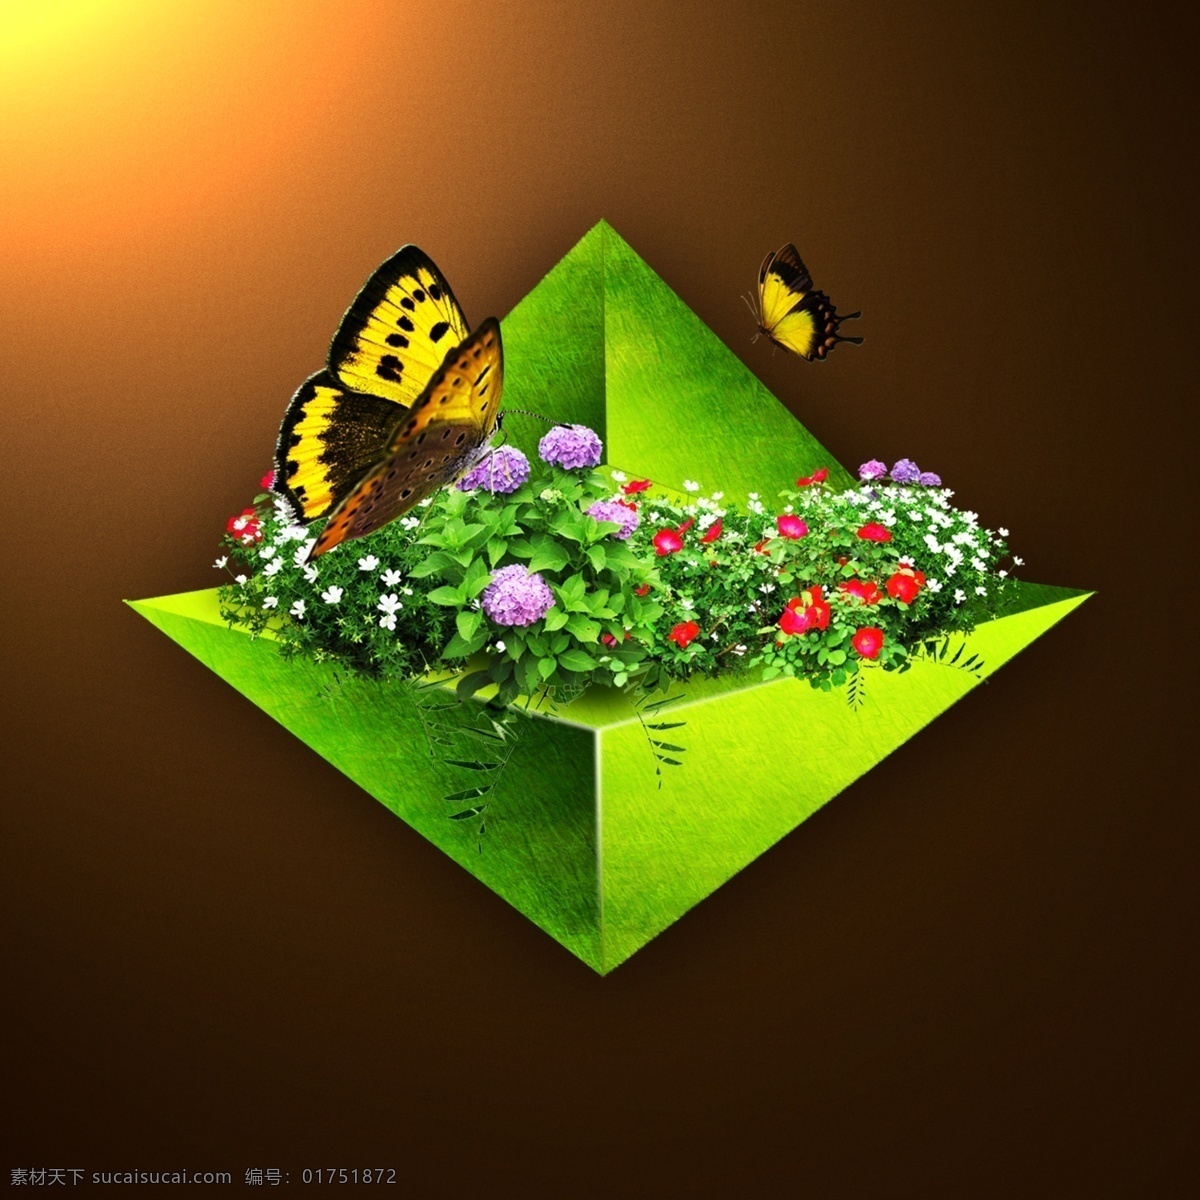 蝴蝶 花 草 绿色 三角 三角锥 梦幻 场景 立体 植物 方块 阳光 光影 透视 分层 源文件 黑色